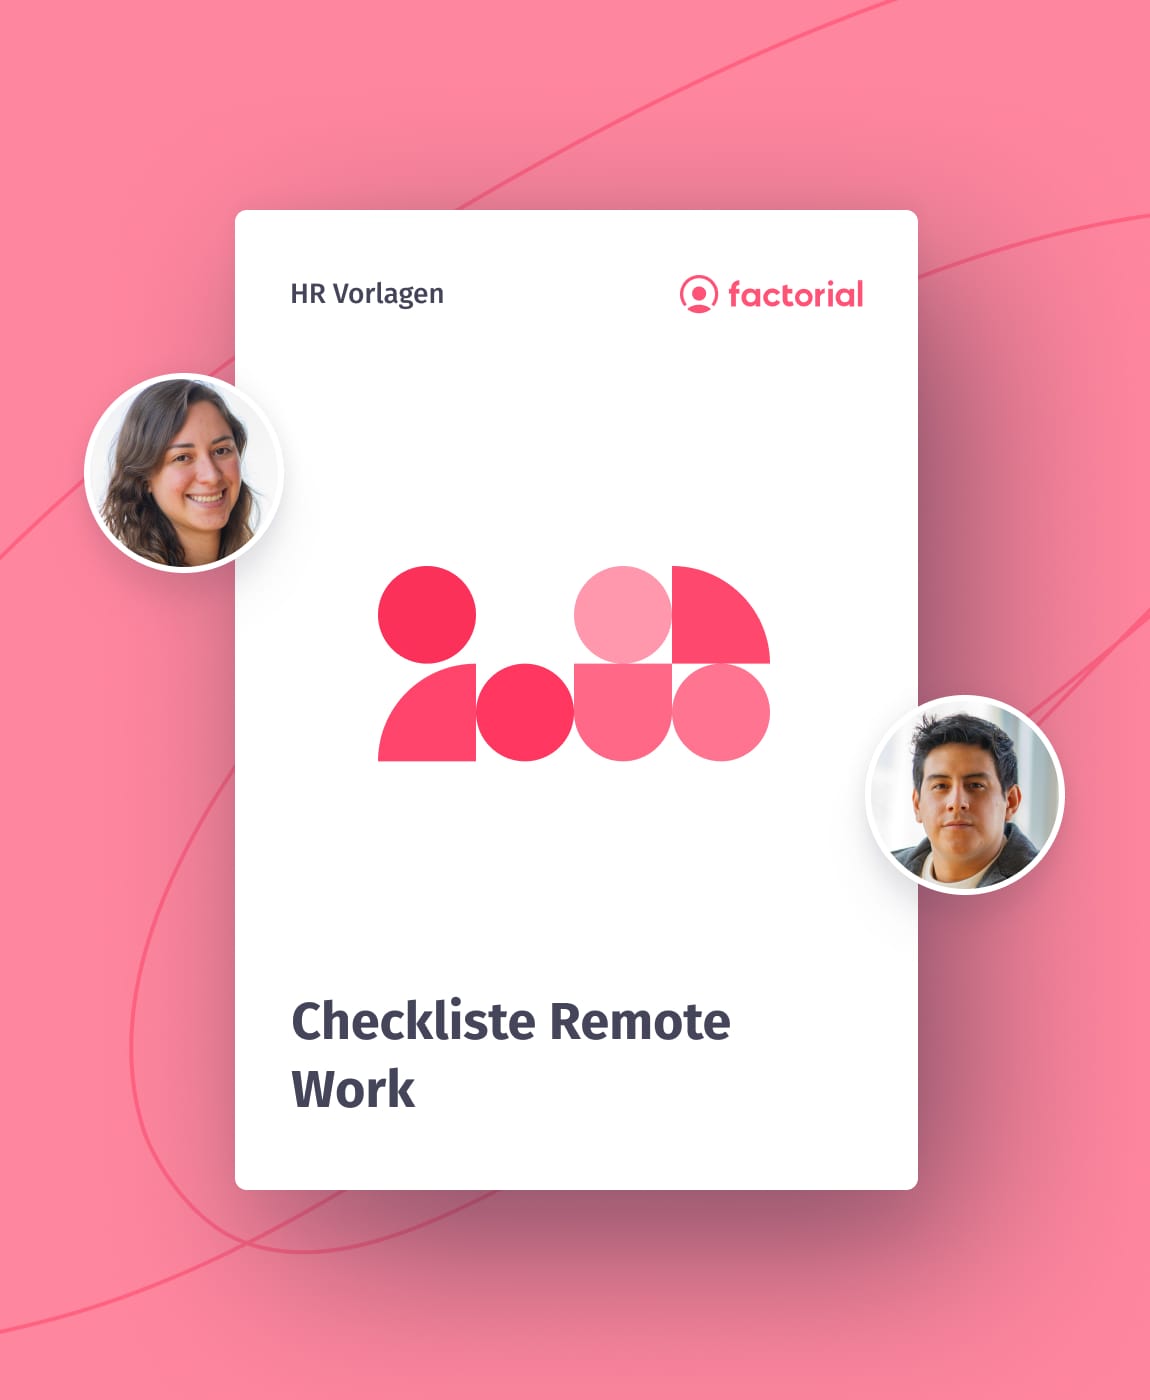 Checkliste Remote Work